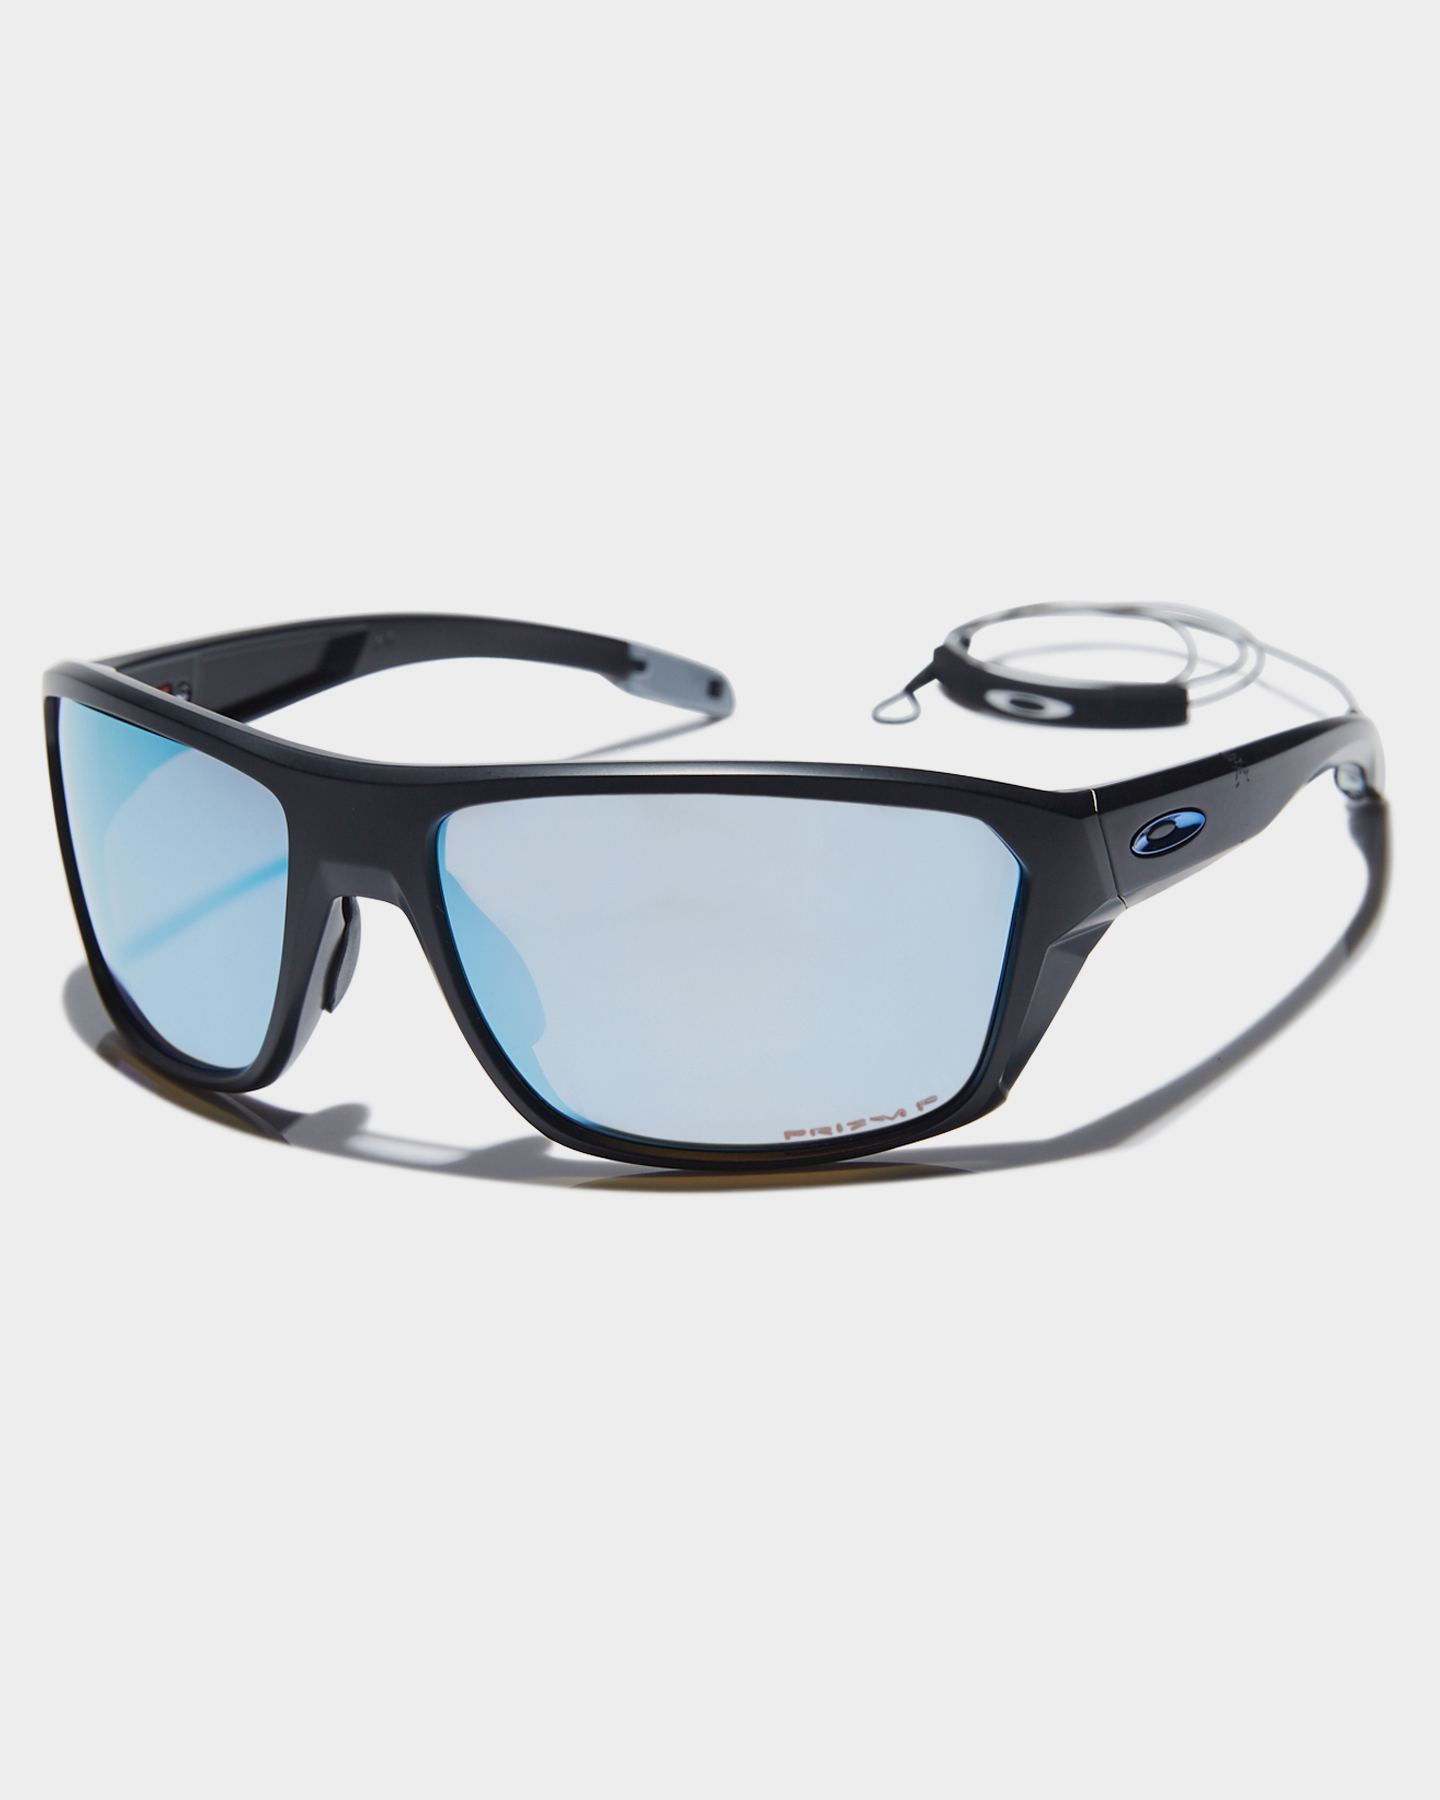 Star Sättigen Verlust oakley fishing specific sunglasses polarized ...